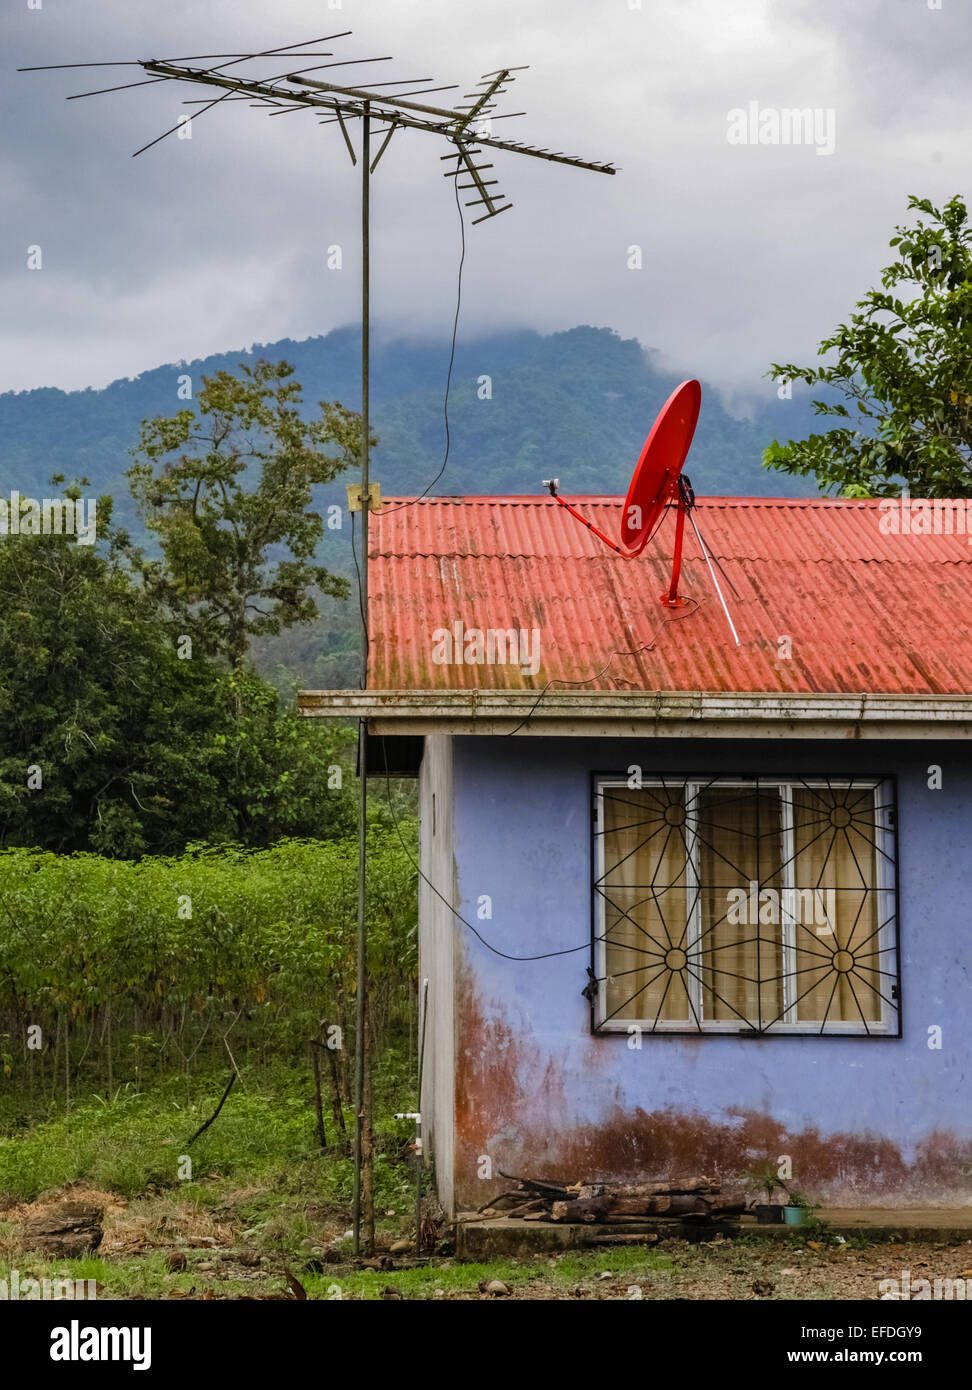 Telekommunikation-Prioritäten der großen Antenne und Satellitenschüssel auf dem Dach eines kleinen Hauses in Costa Rica Stockfoto